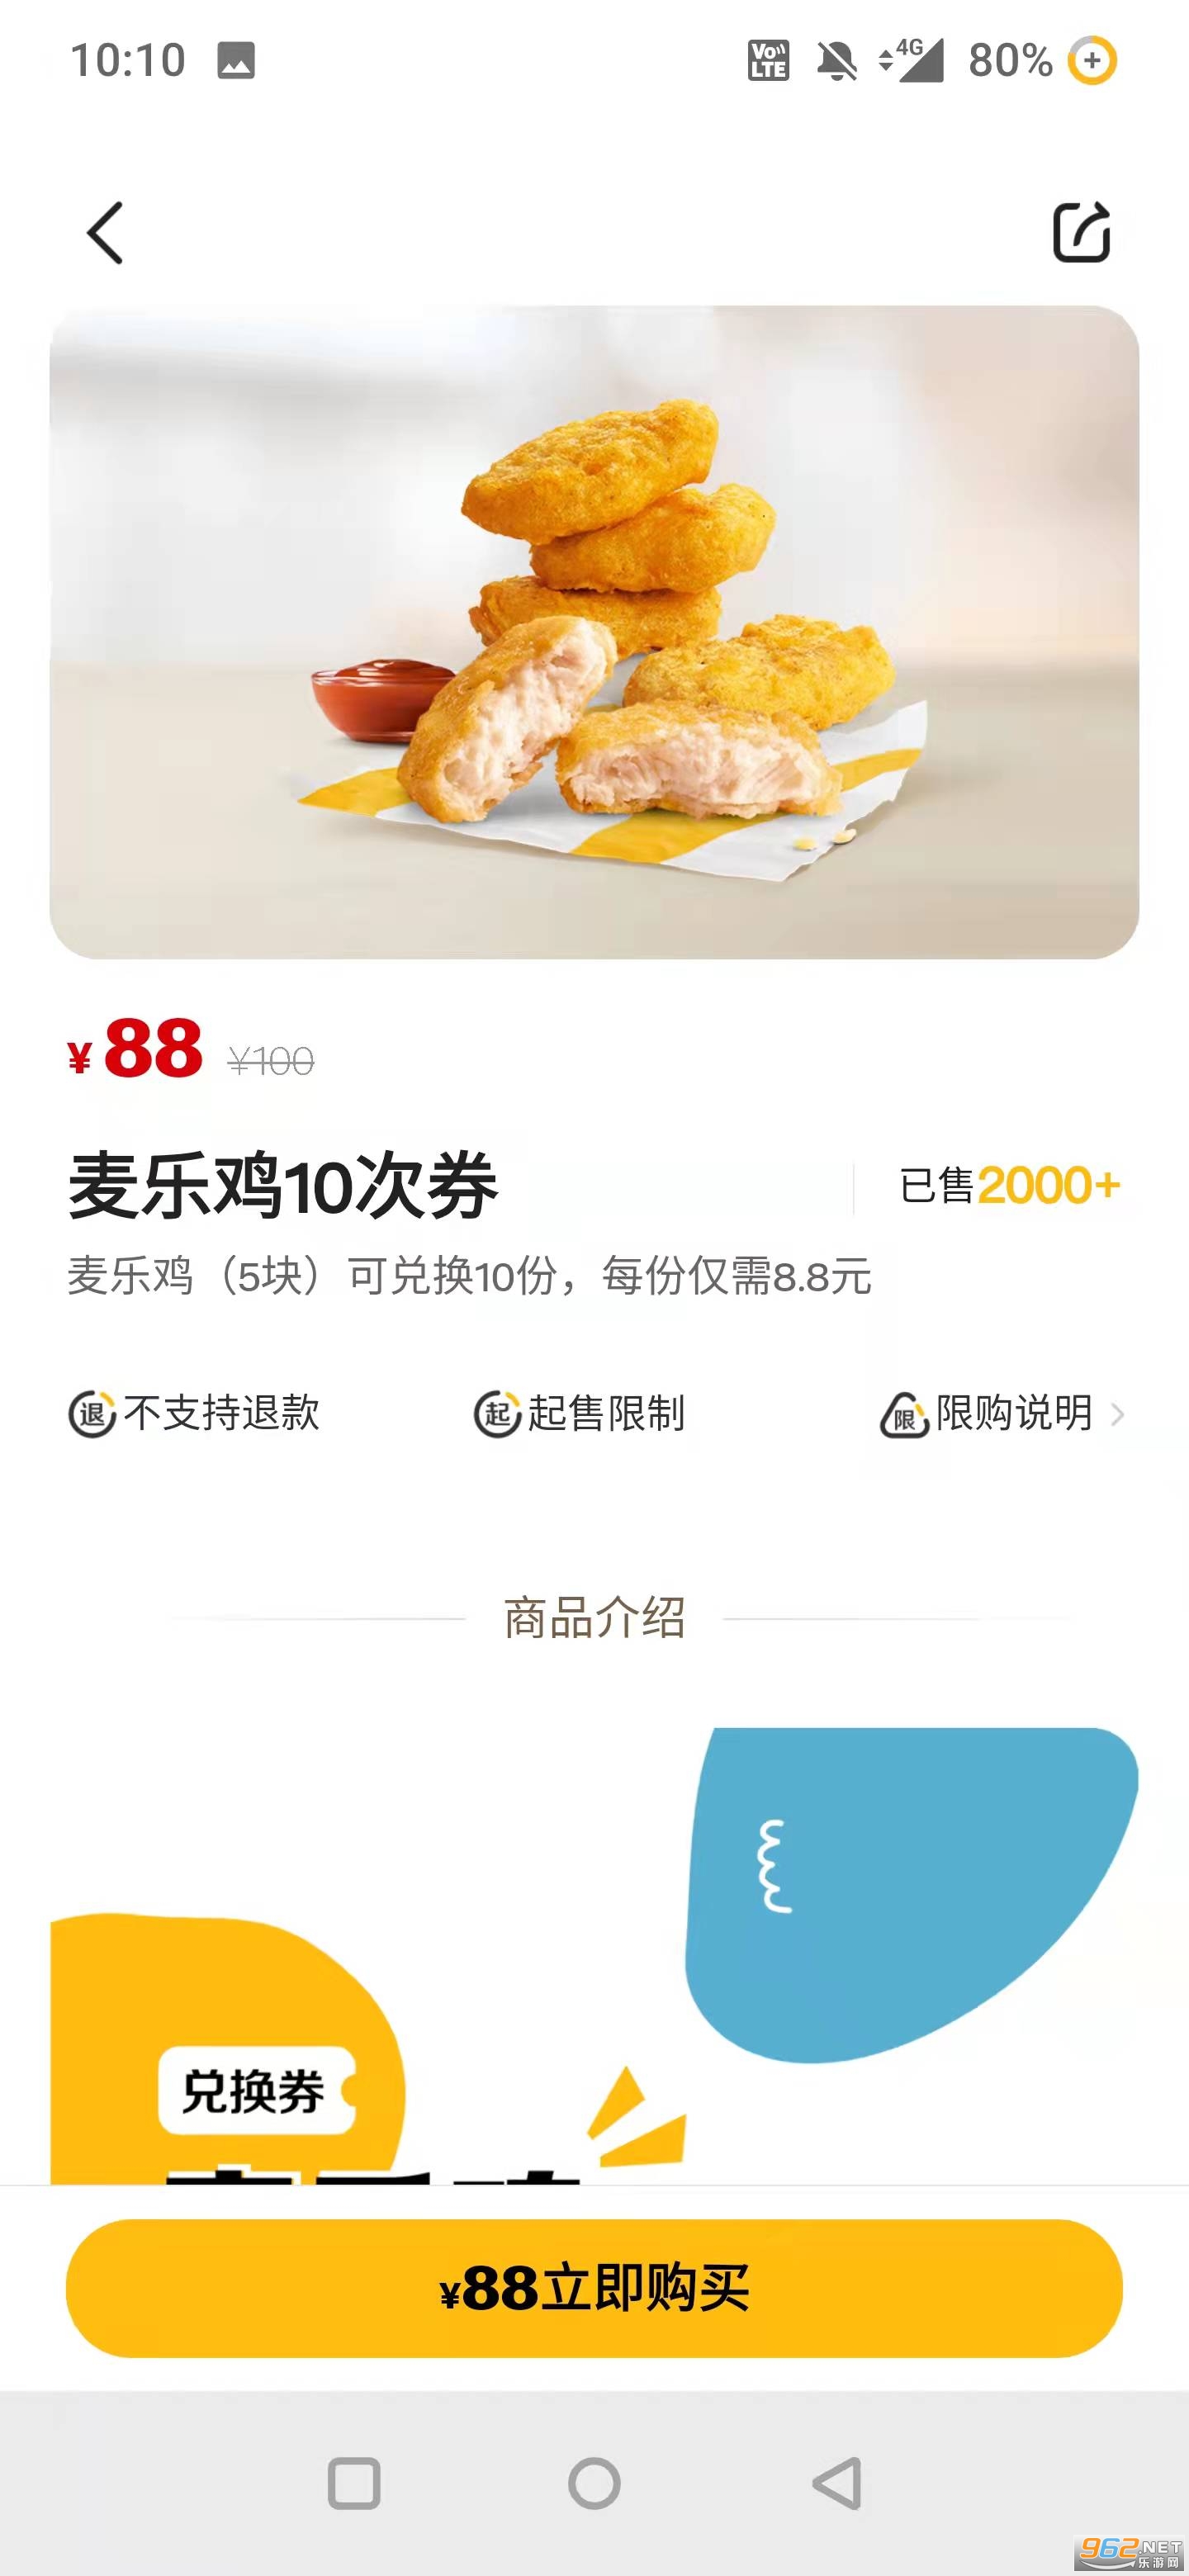 �����诰W上�餐appv6.0.34.0最新版本截�D2